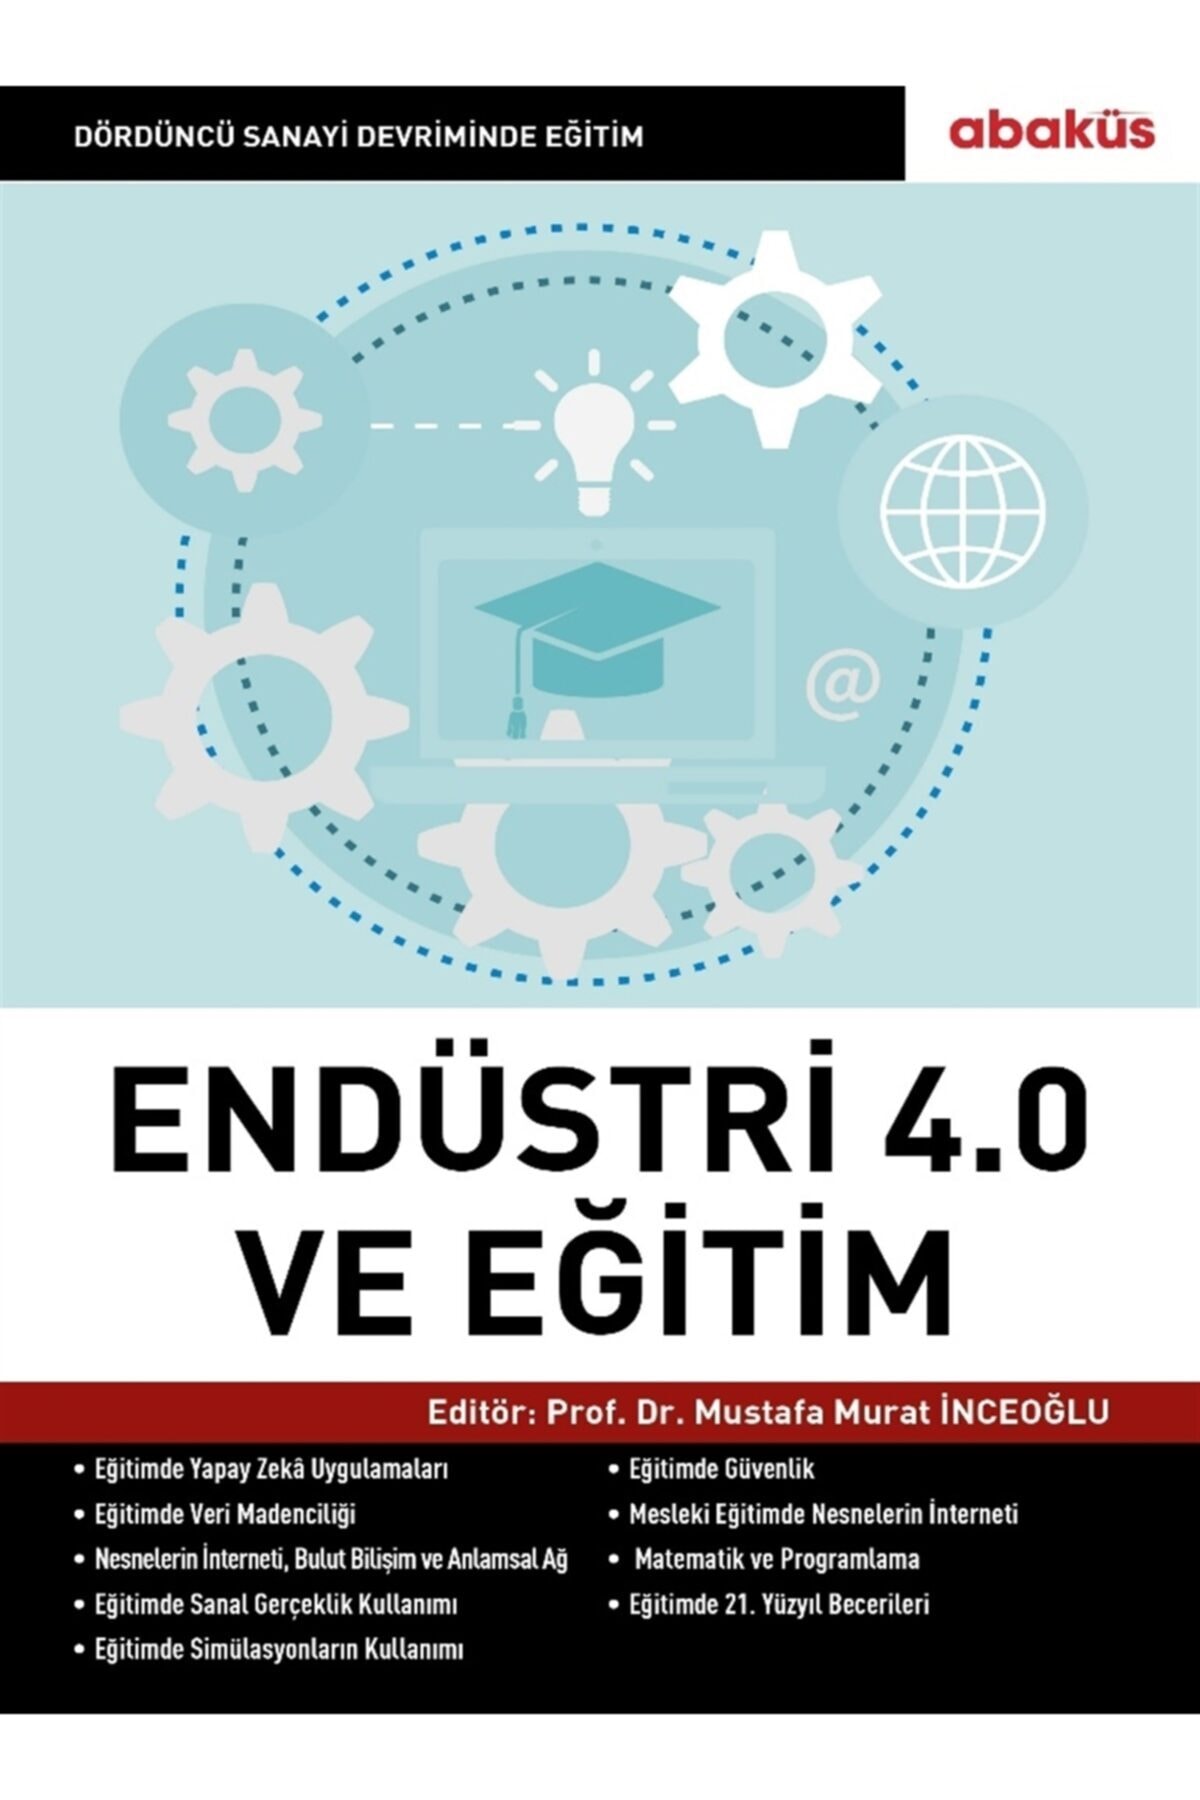 Индустрия 4.0 (Четвертая промышленная революция) и образование